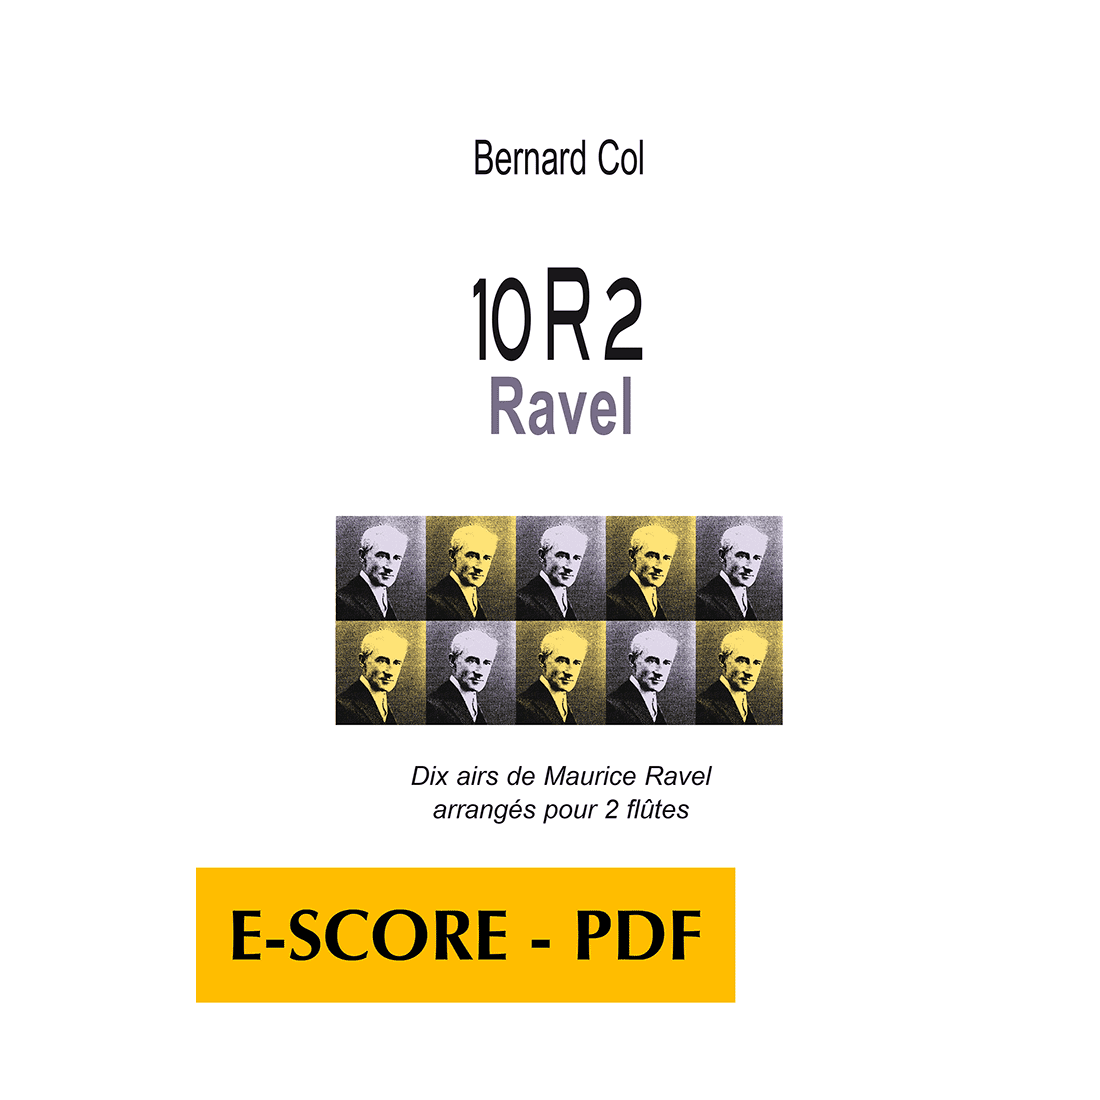 10R2 Ravel - Dix airs de Ravel arrangés pour 2 flûtes - E-score PDF